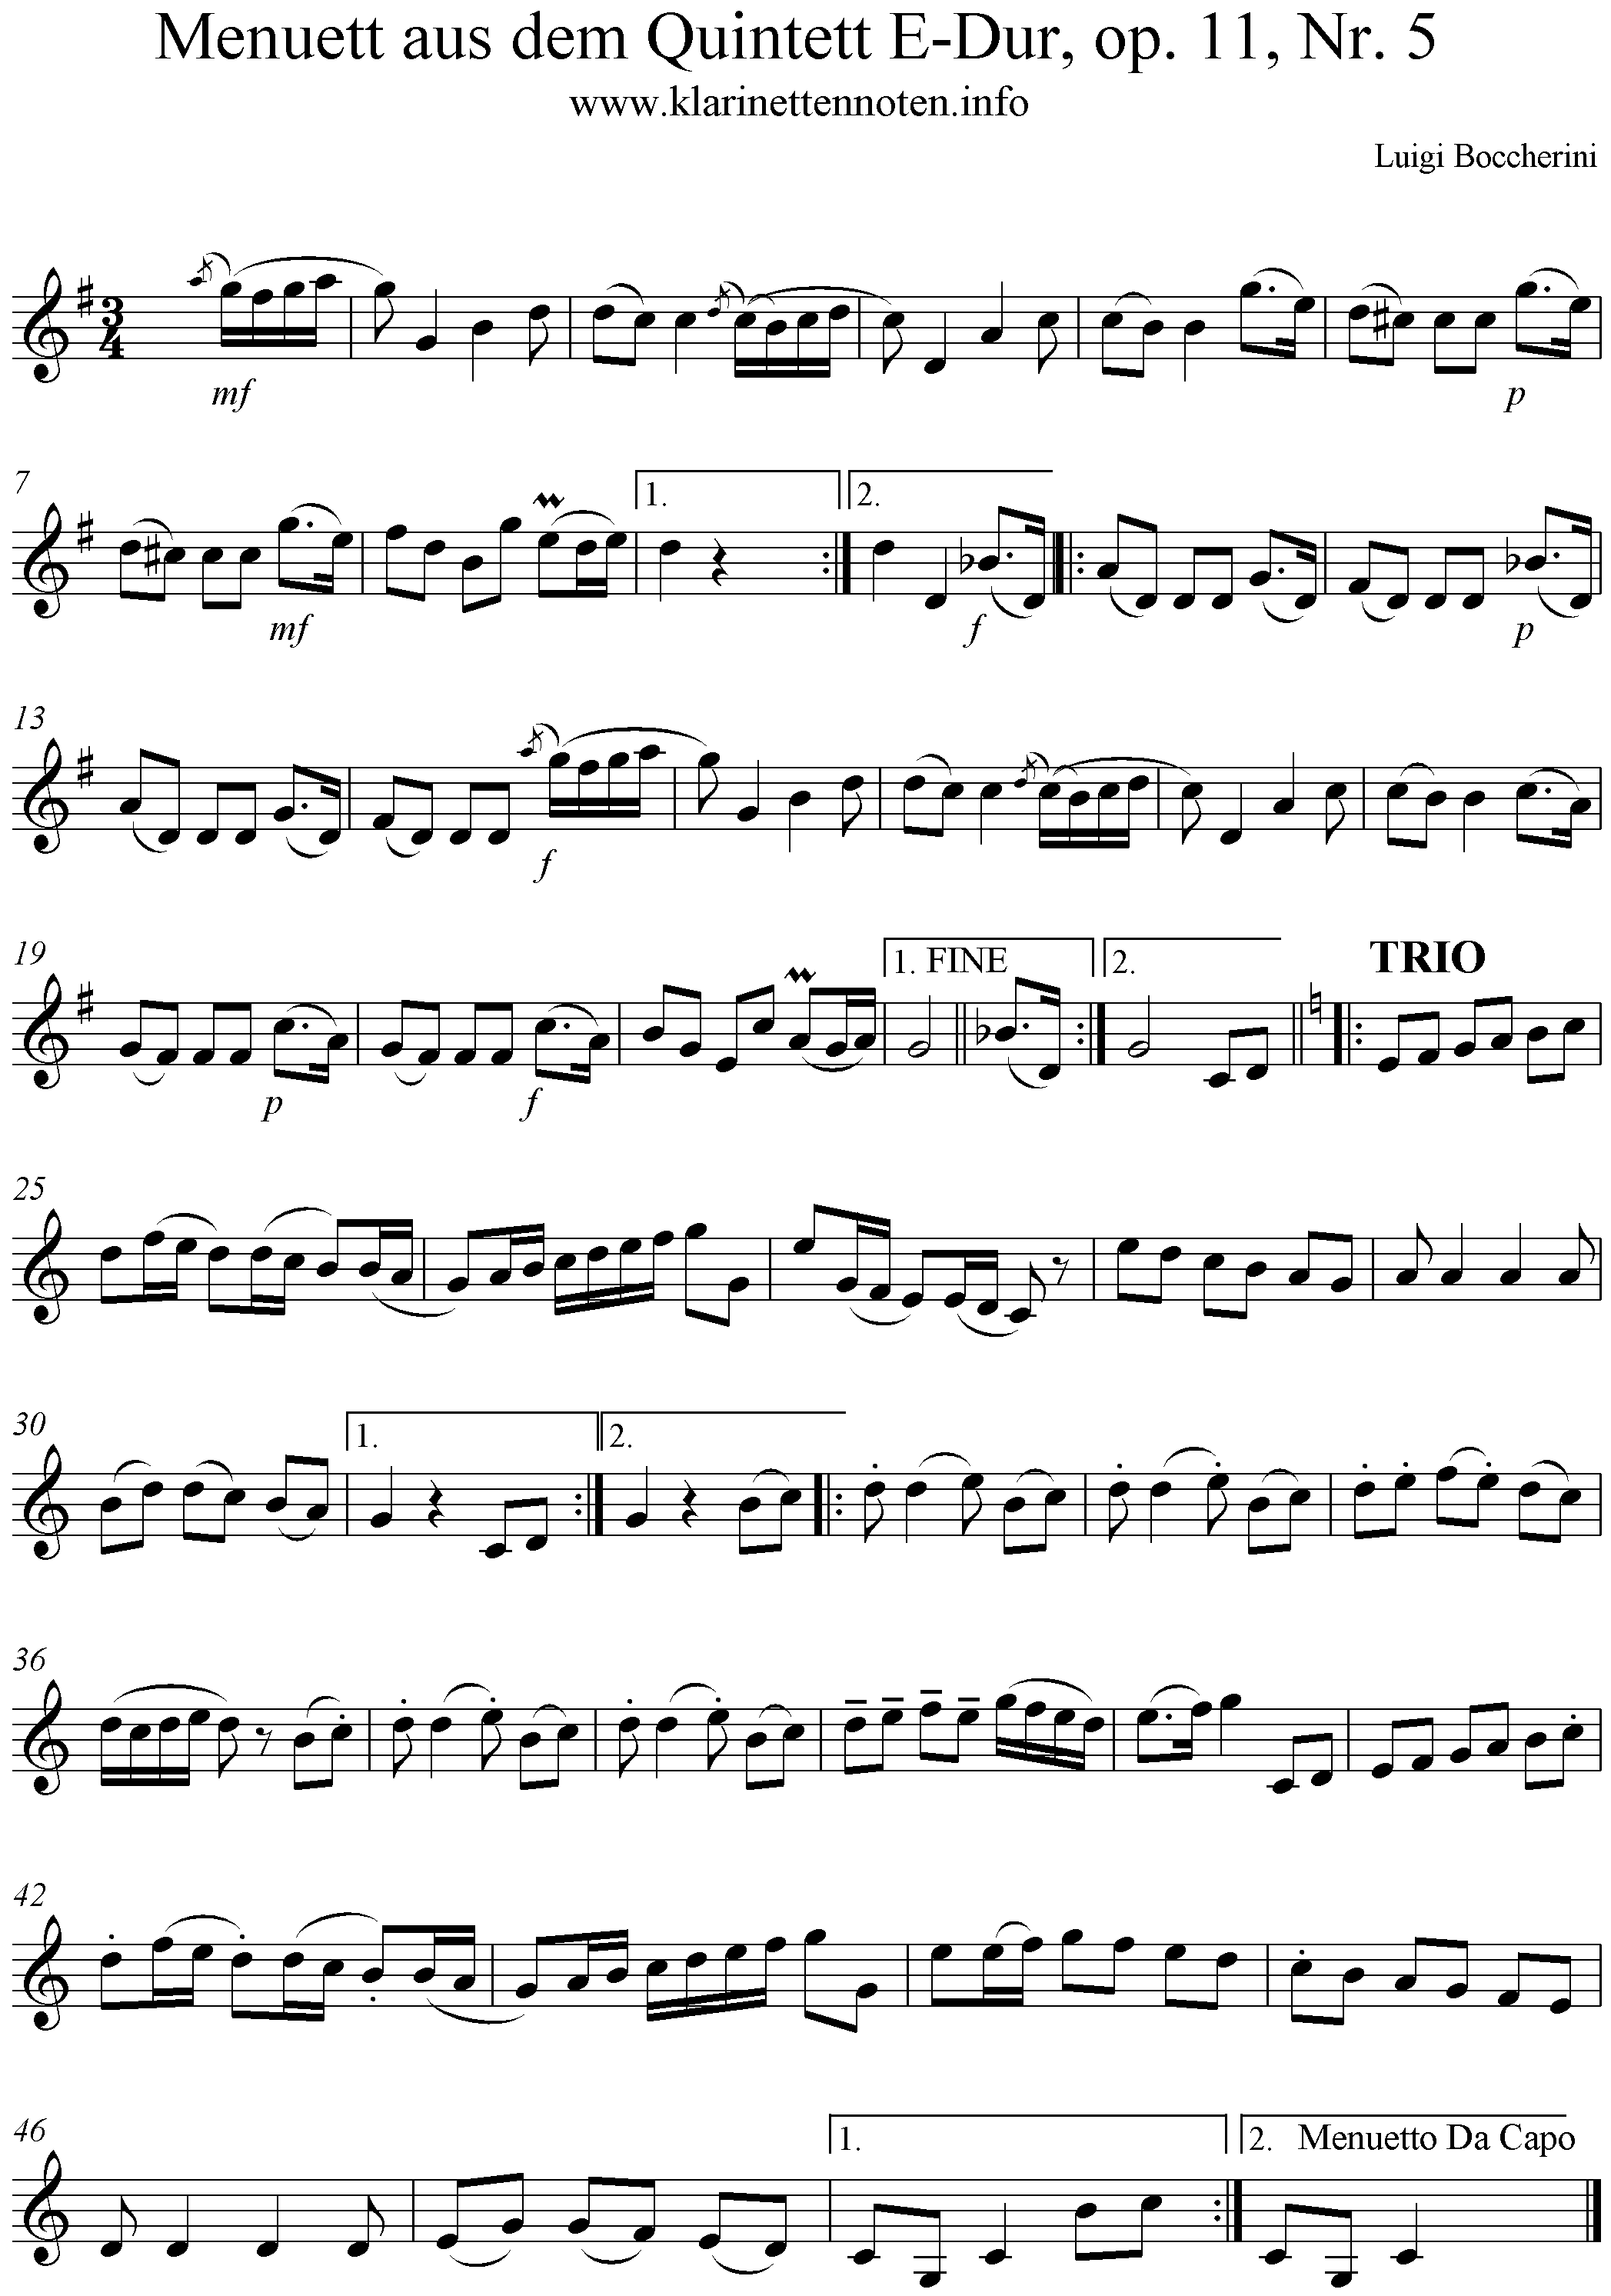 Menuett aus dem Quintett E-Dur, op. 11, Nr. 5, Clarinet, Klarinette